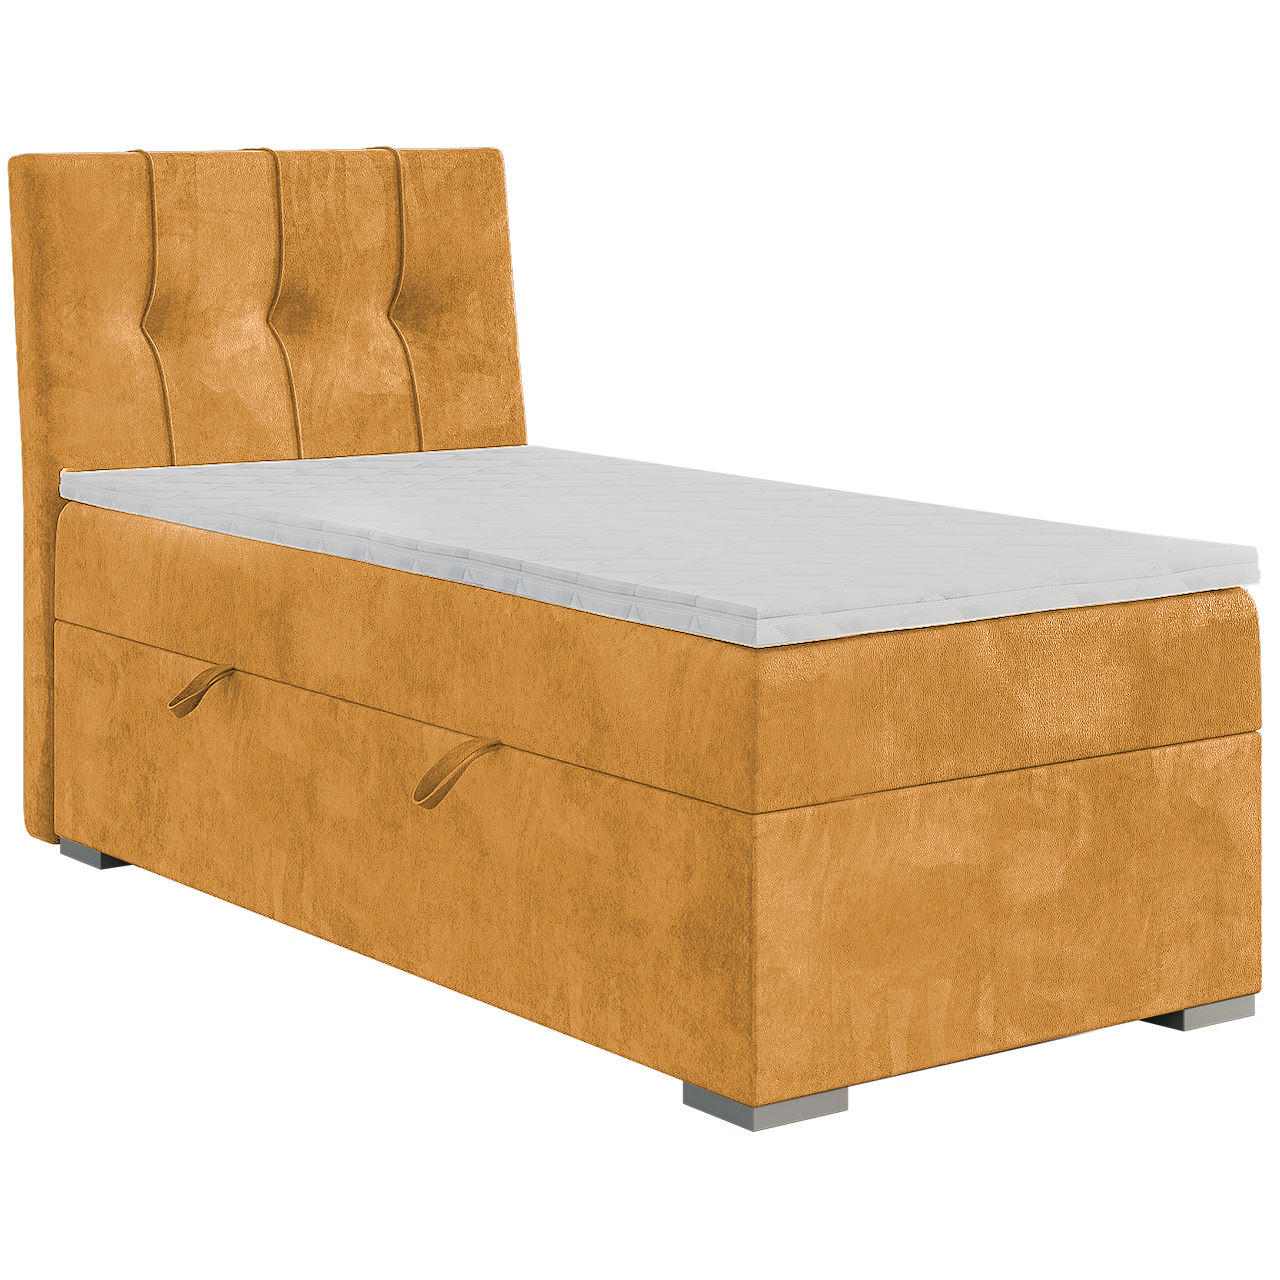 Upholstered bed DANO 90x200 right magic velvet 2215